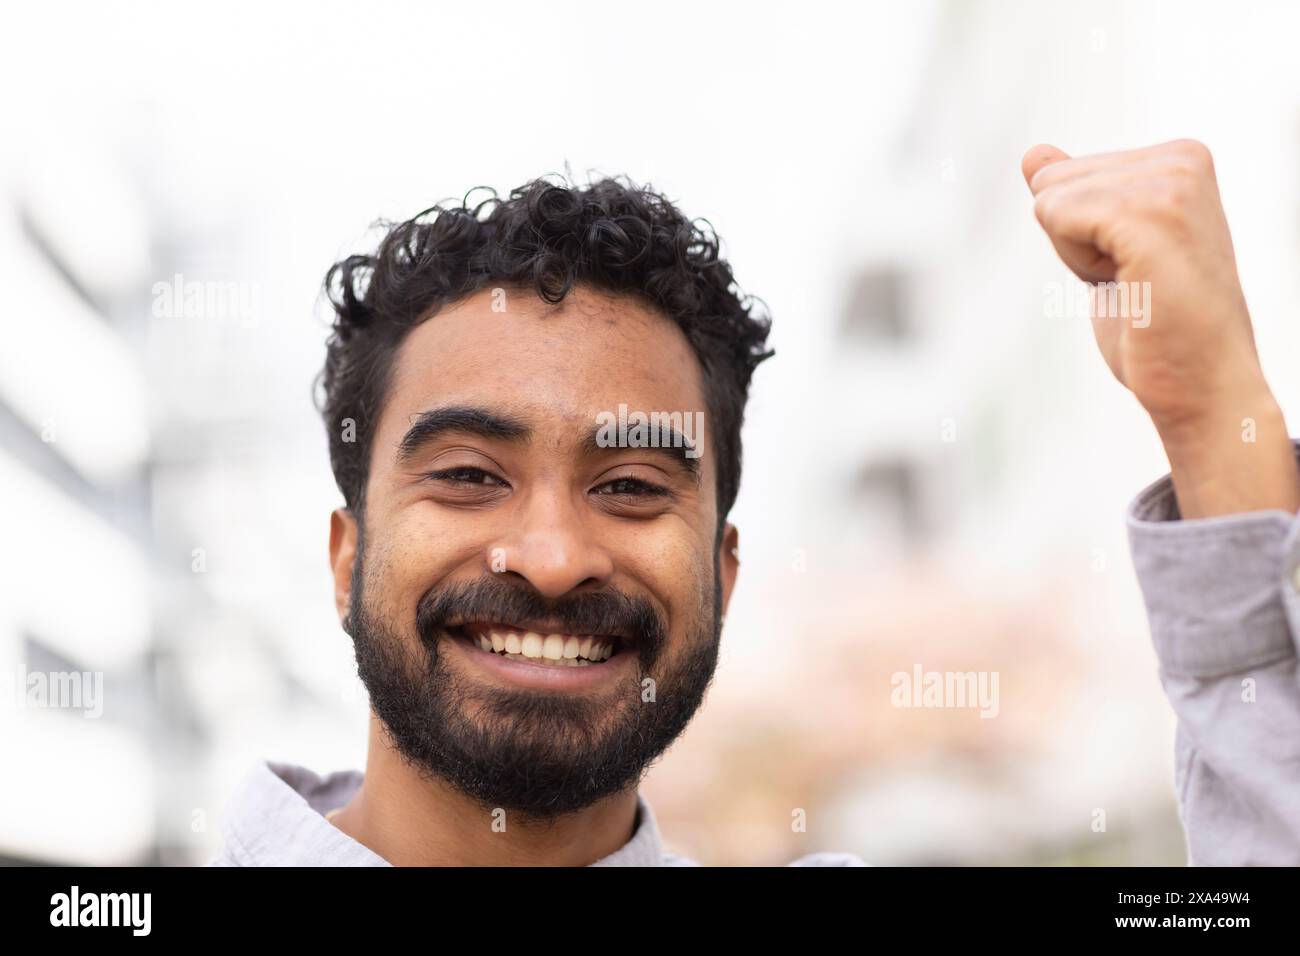 Ein lächelnder Mann mit lockigen Haaren hebt seine Faust in einer Geste des Erfolgs oder der Feier vor einem verschwommenen städtischen Hintergrund. Stockfoto